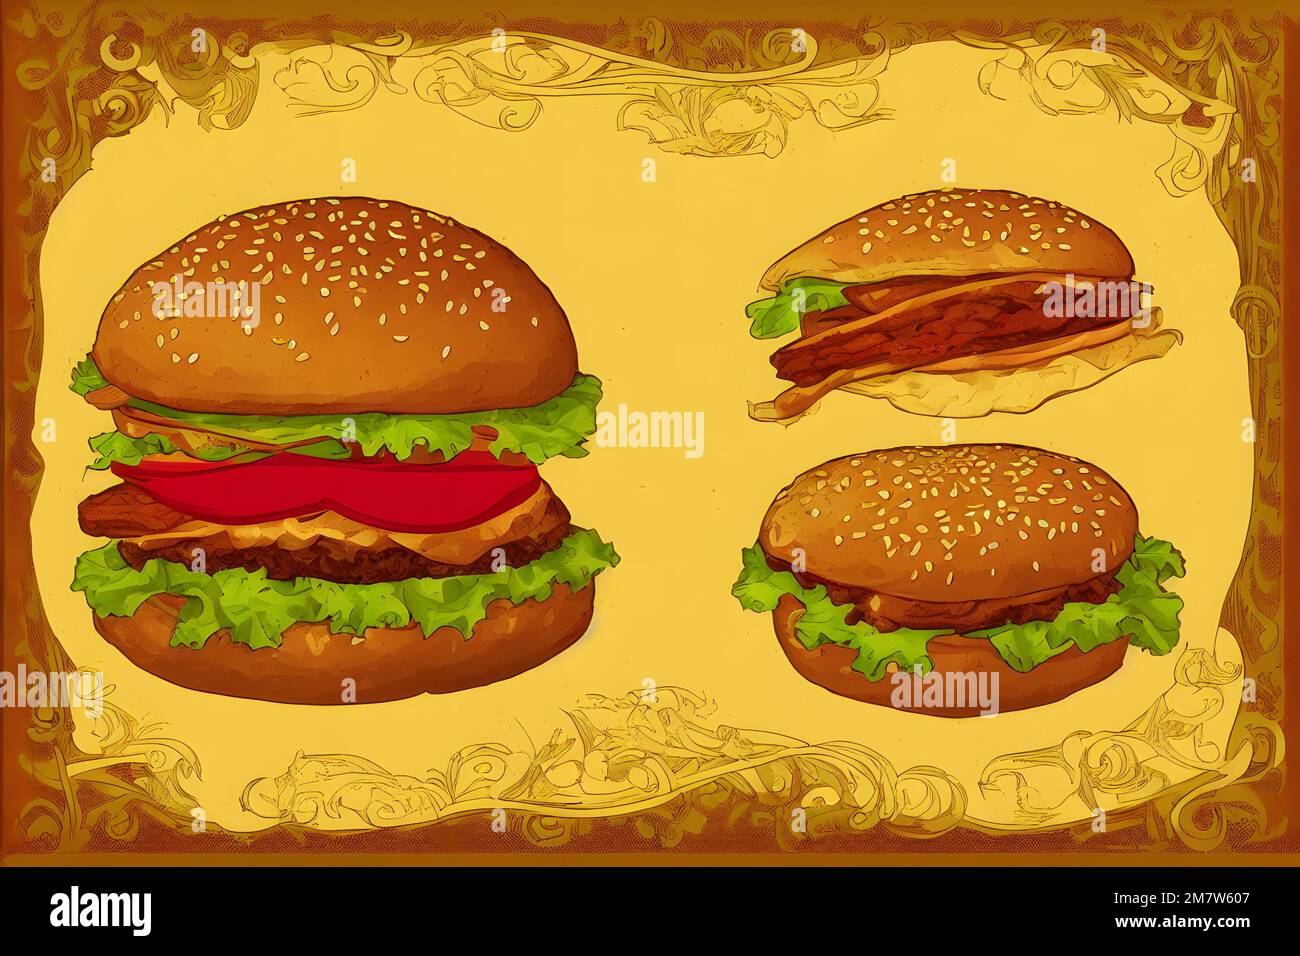 Illustrazione di hamburger in stile Art Nouveau, un classico fast food Foto Stock